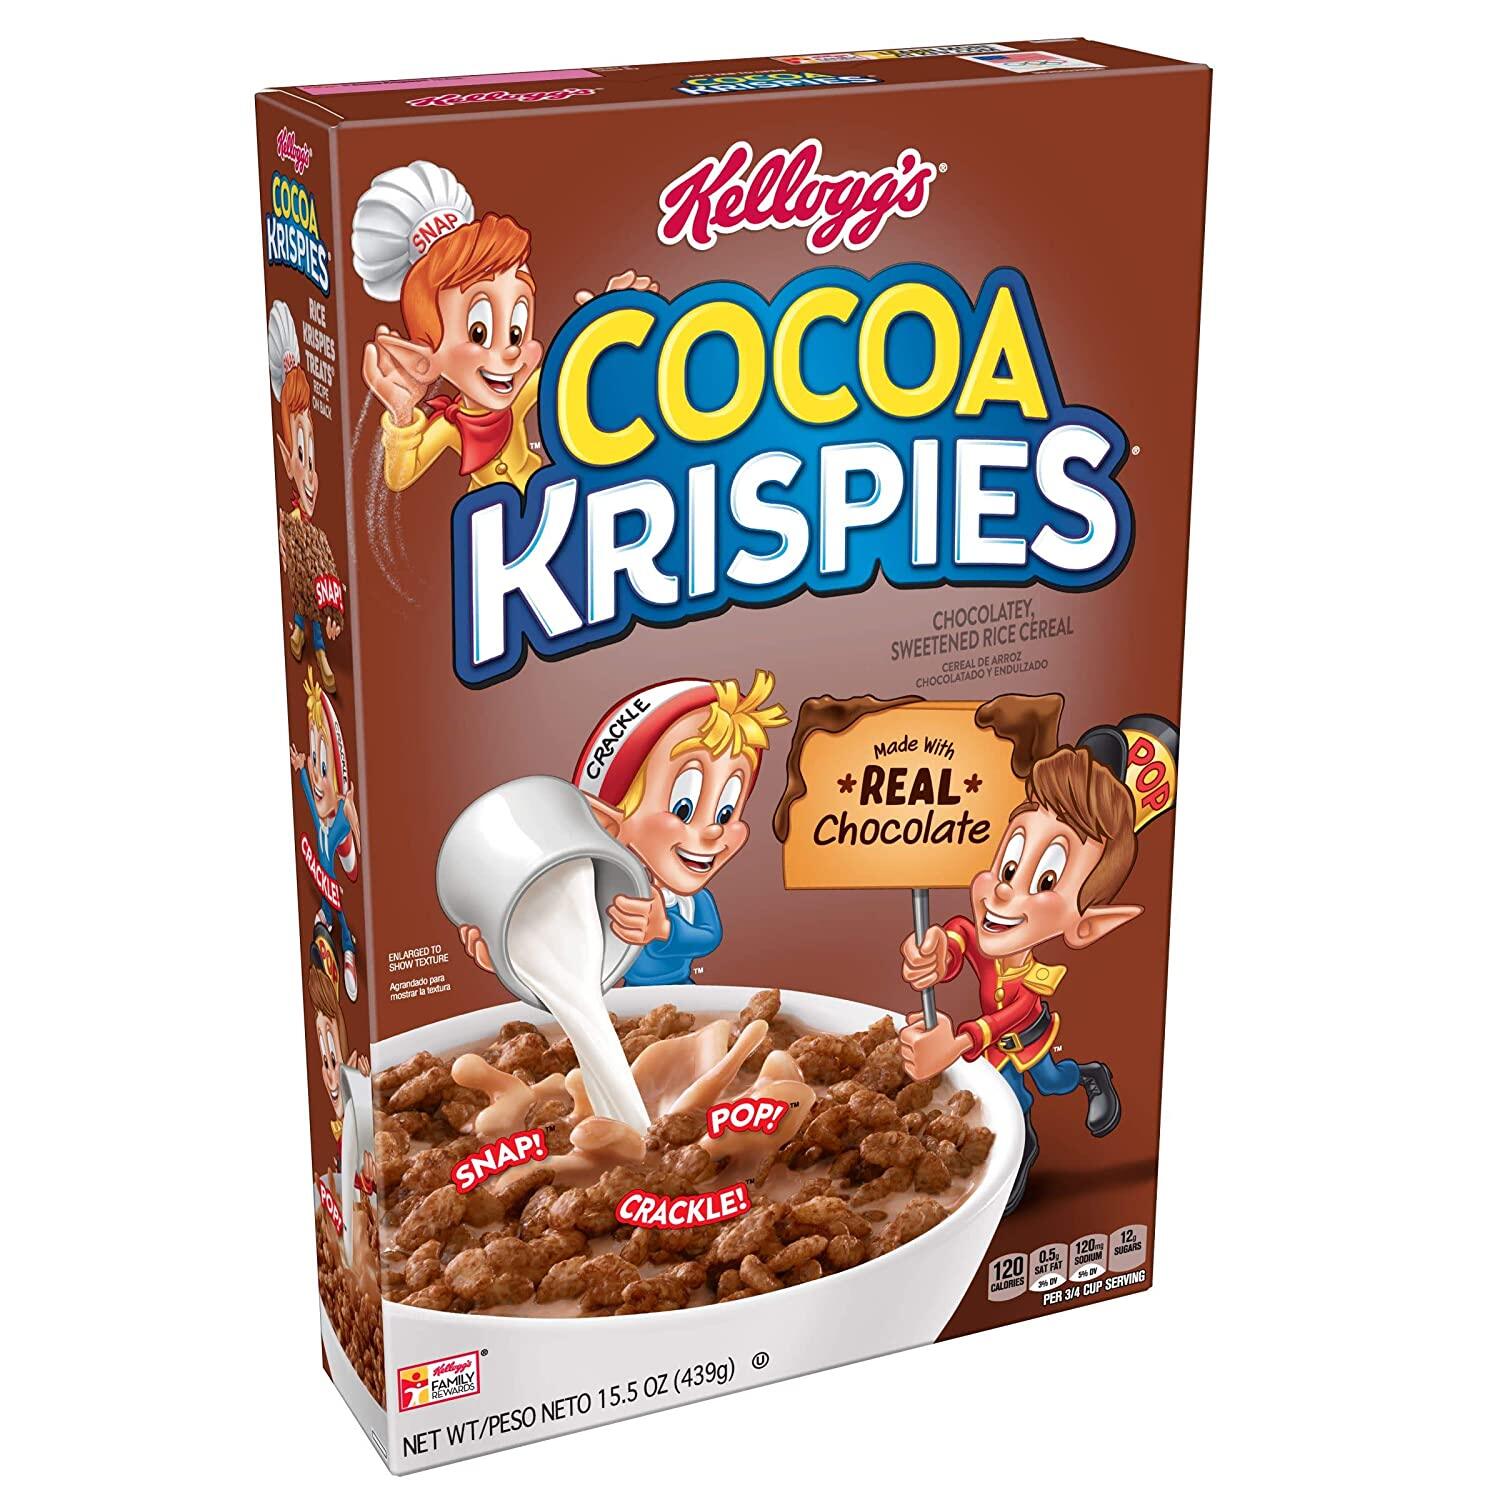 Kellogg's Cocoa Krispies 439 G (Made with Real Chocolate) อาหารเช้าซีเรียล ข้าวพองอบกรอบ รสช็อกโกแลต ตรา เคลล็อกส์ 439 กรัม นำเข้าจากUSA